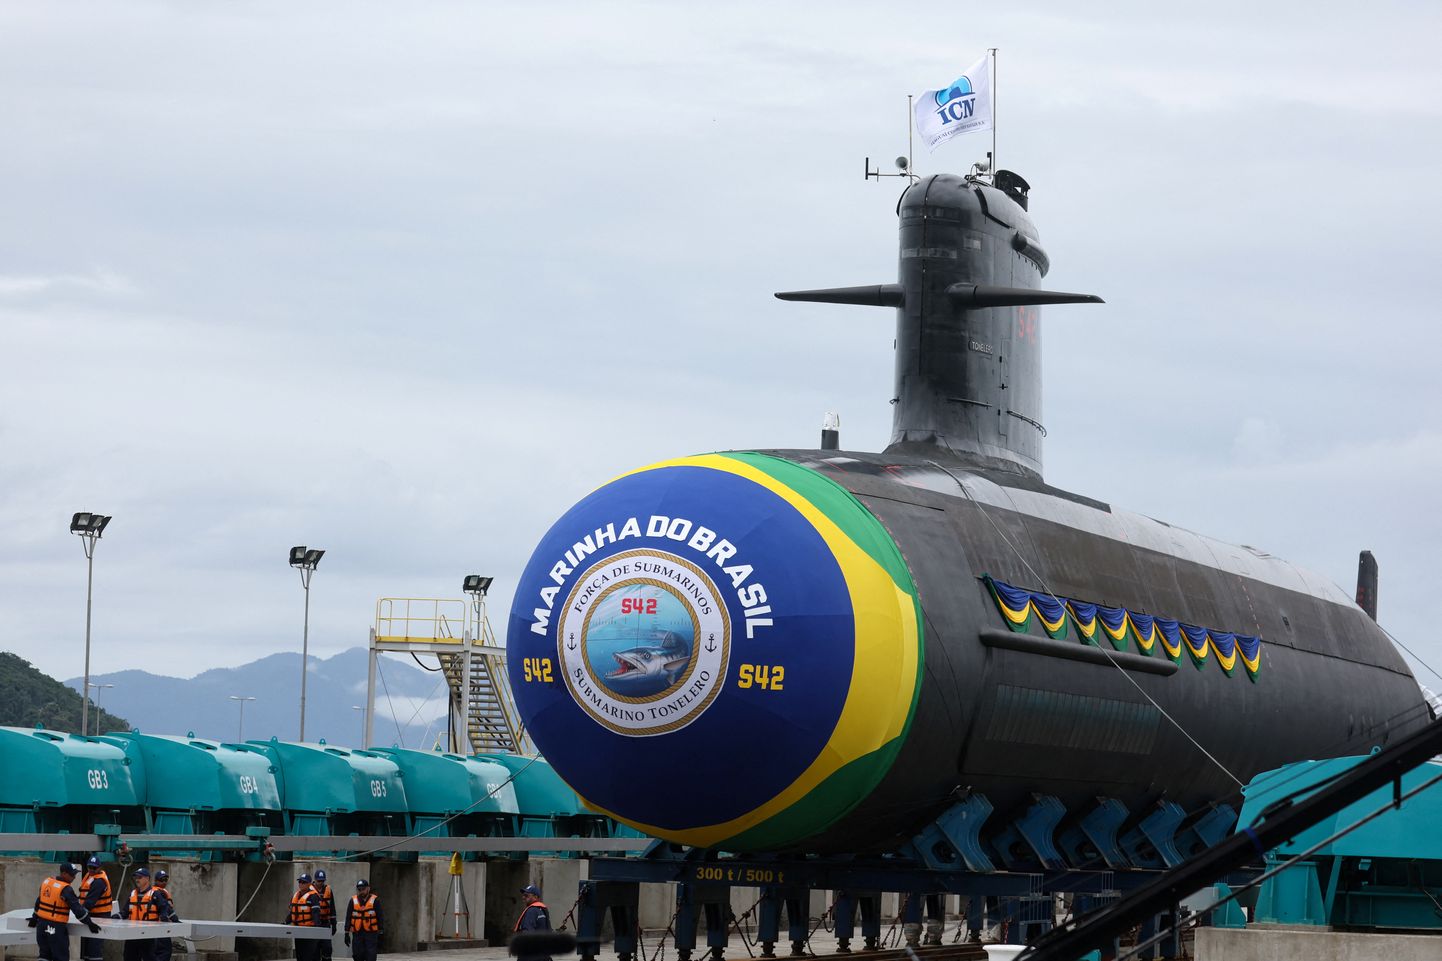 Prantsuse tehnoloogial põhinev ja Brasiilias ehitatud Scorpene-klassi diiselmootoriga allveelaev 27. märtsil Itaguai laevaehitustehases Rio de Janeiro osariigis.